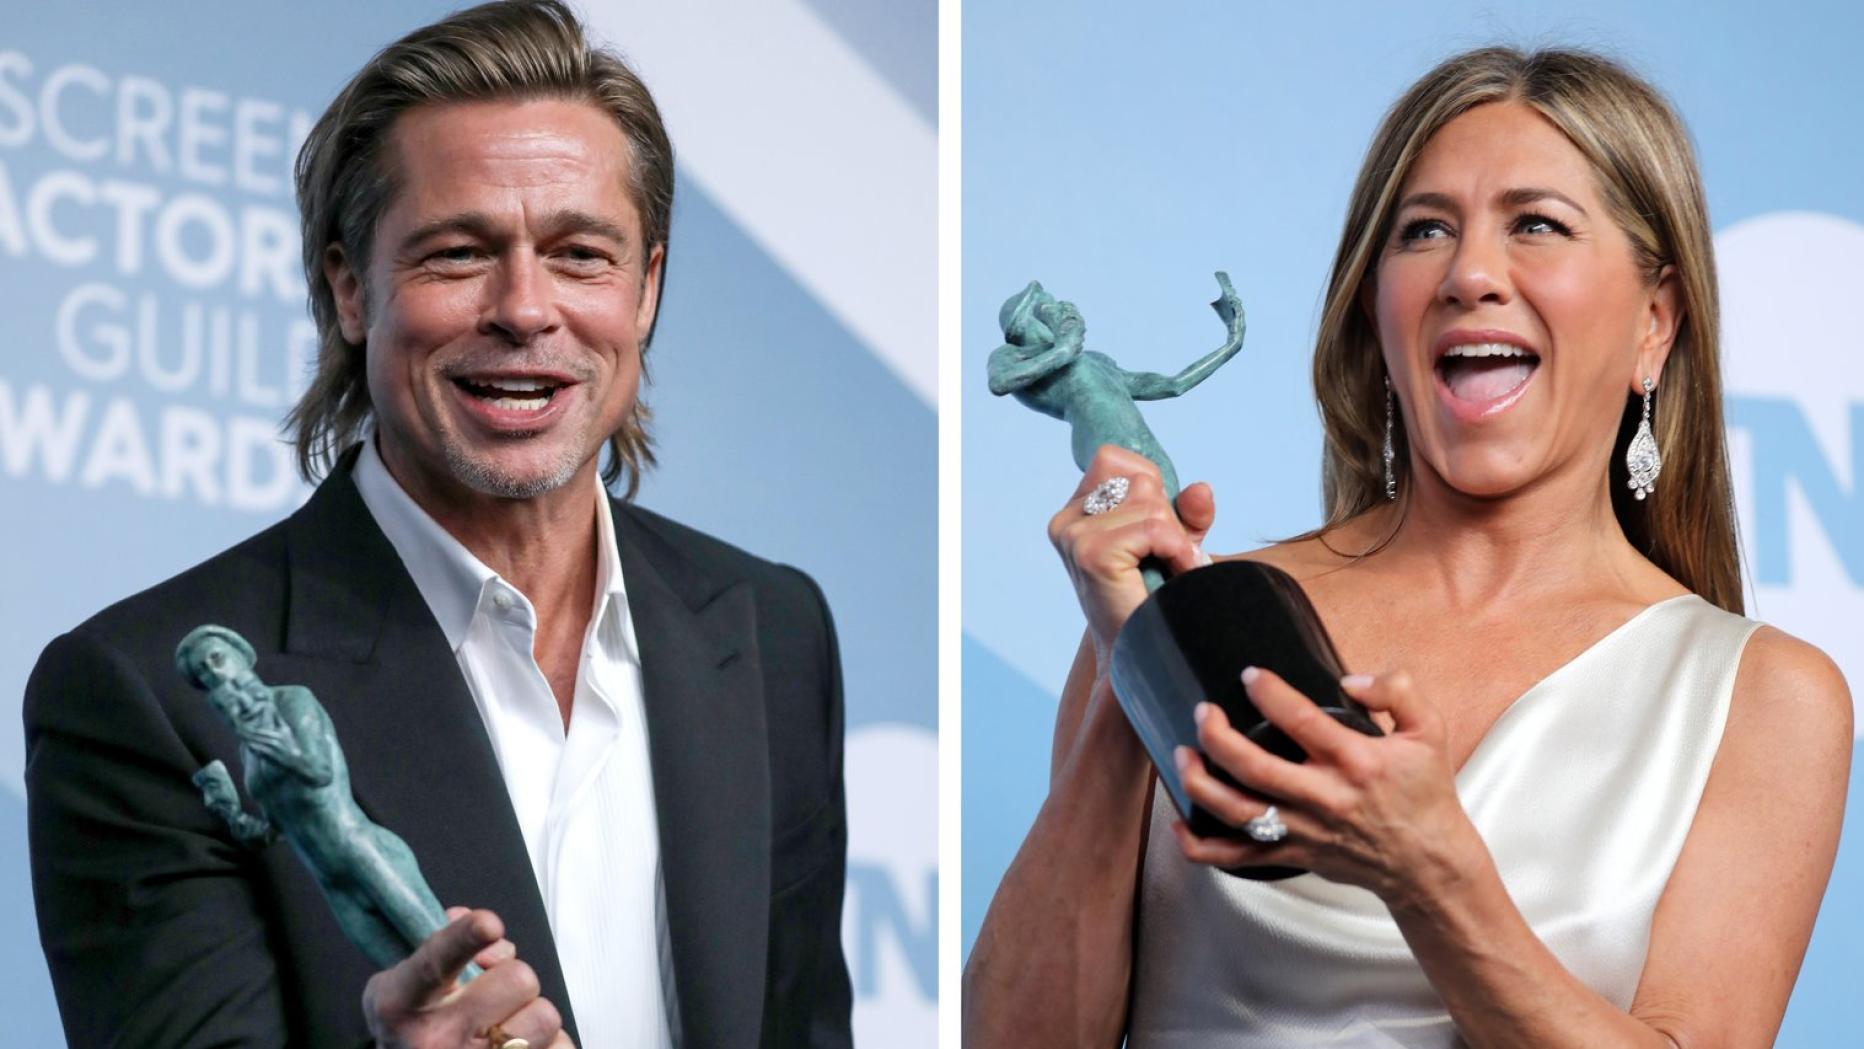 Die 3 Verrucktesten Geruchte Uber Jennifer Aniston Und Brad Pitt 2020 Kurier At